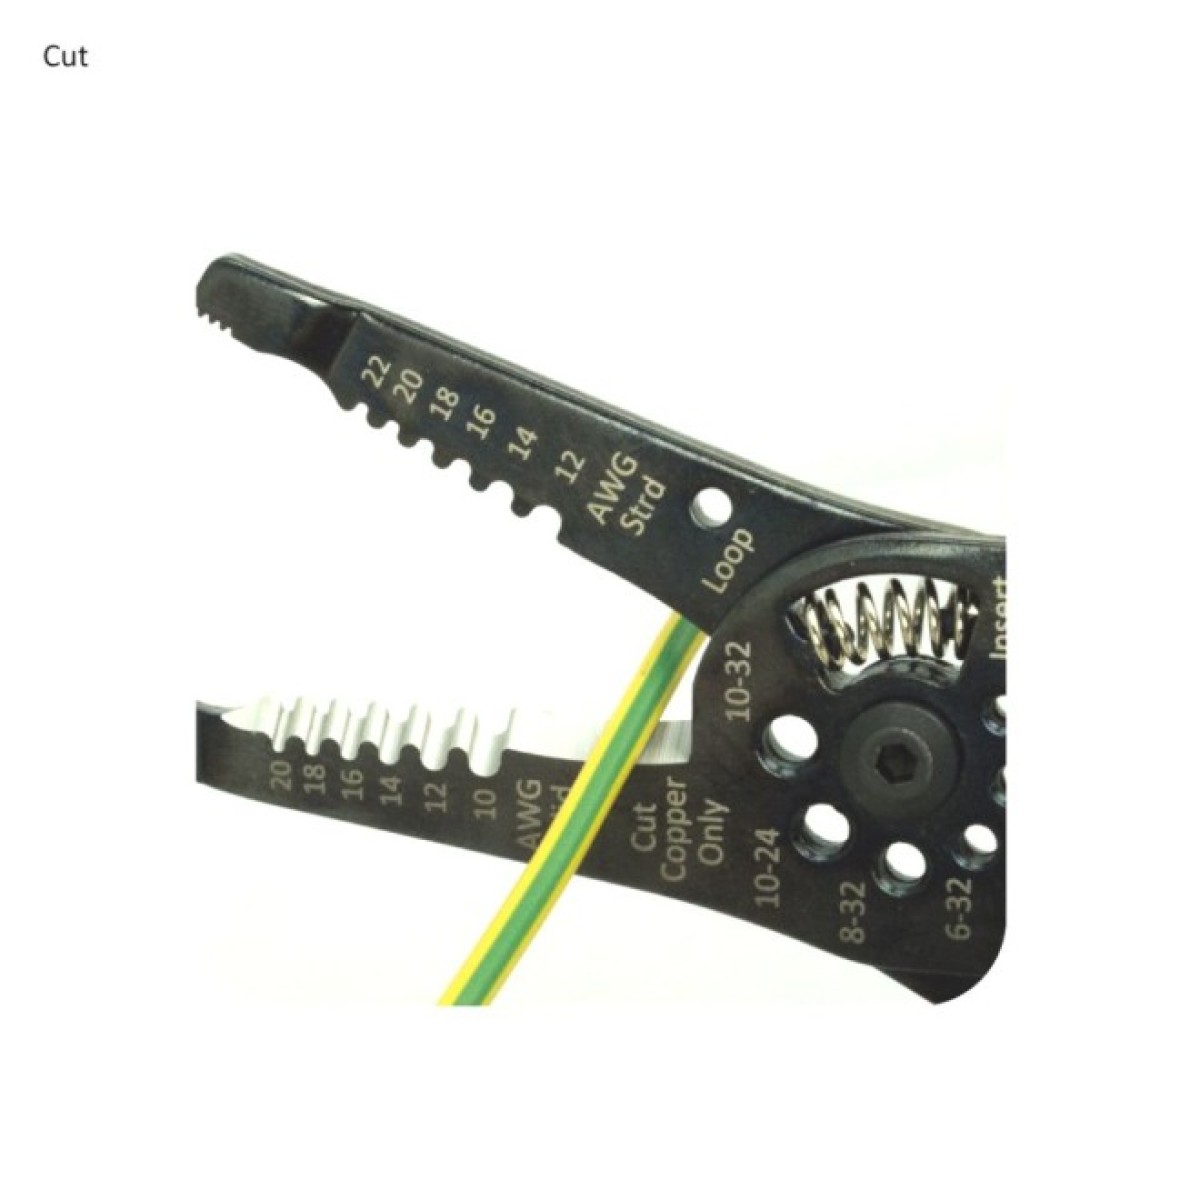 Багатоцільовий інструмент для зачистки, обрізання та обтиску електричних проводів, 0.5-6.0 мм2, Hanlong 98_98.jpg - фото 4